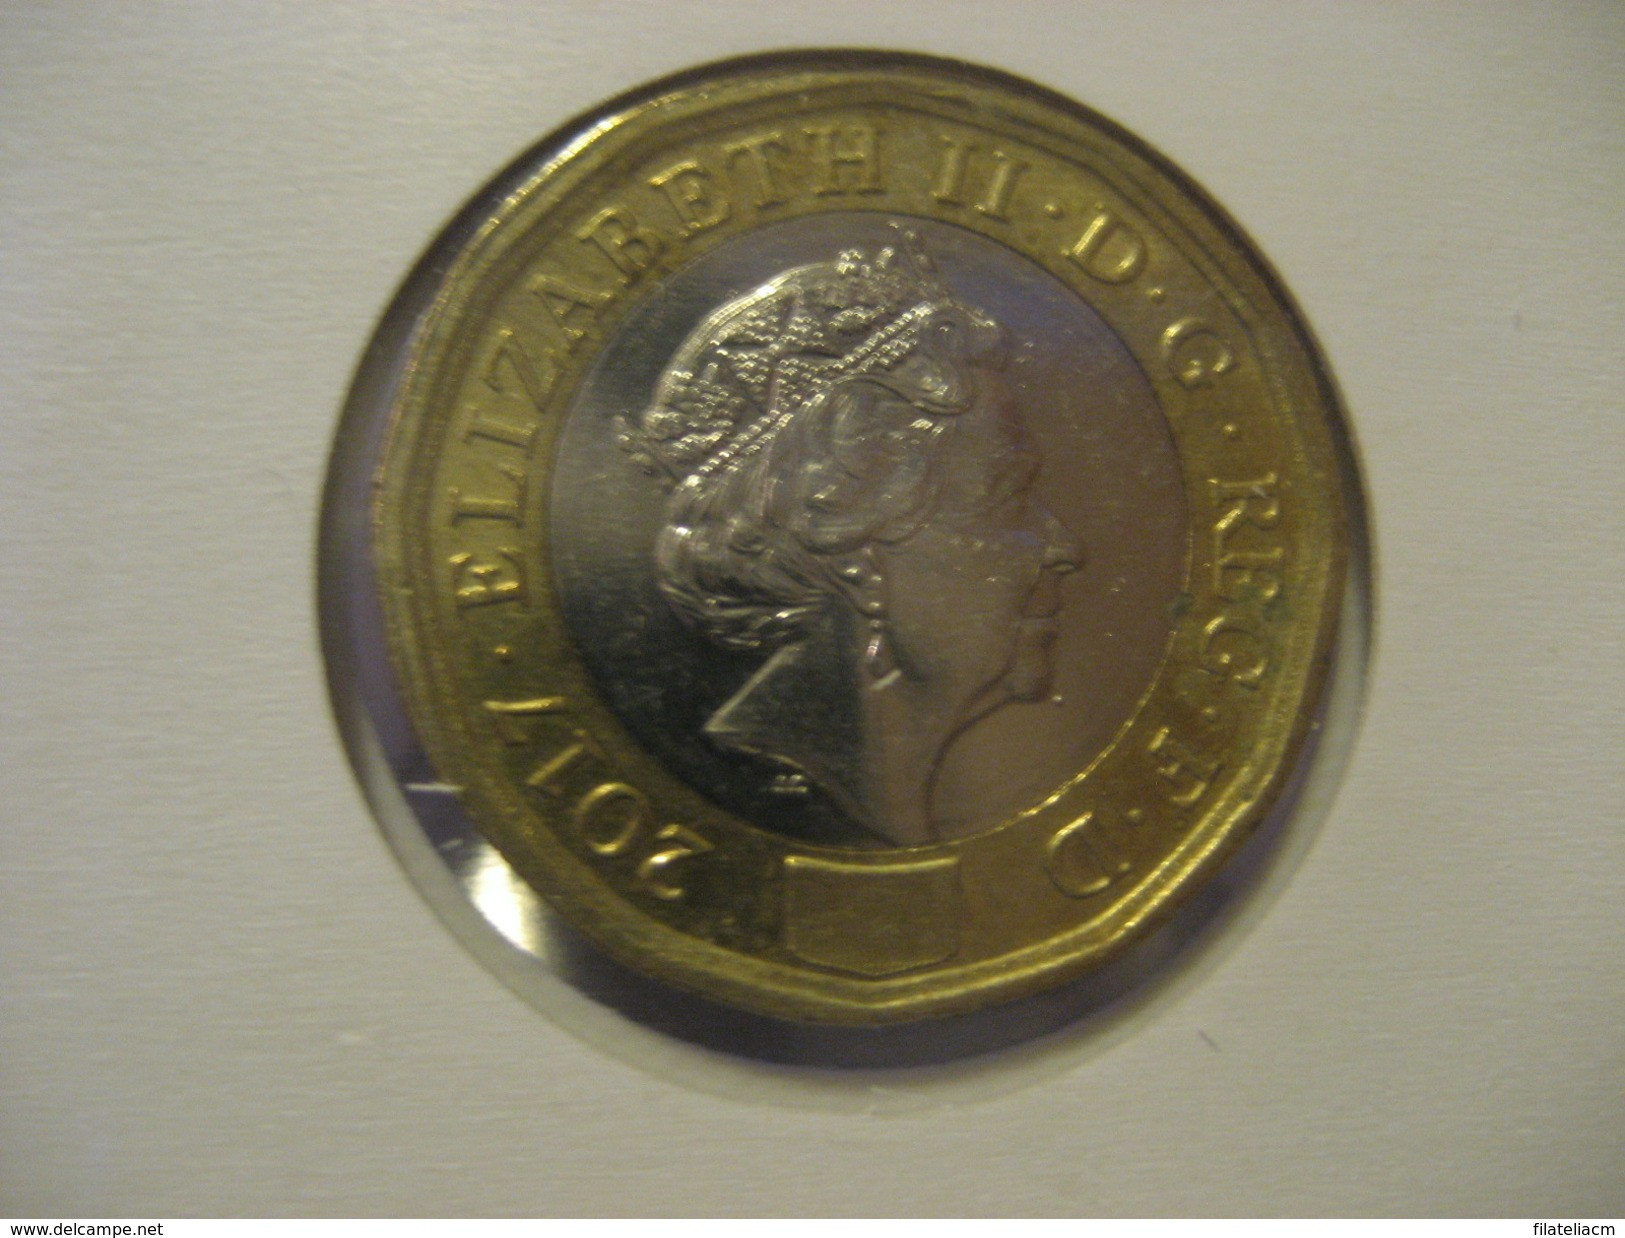 1 Pound 2017 ENGLAND Great Britain QE II Bimetallic Coin - 1 Pound